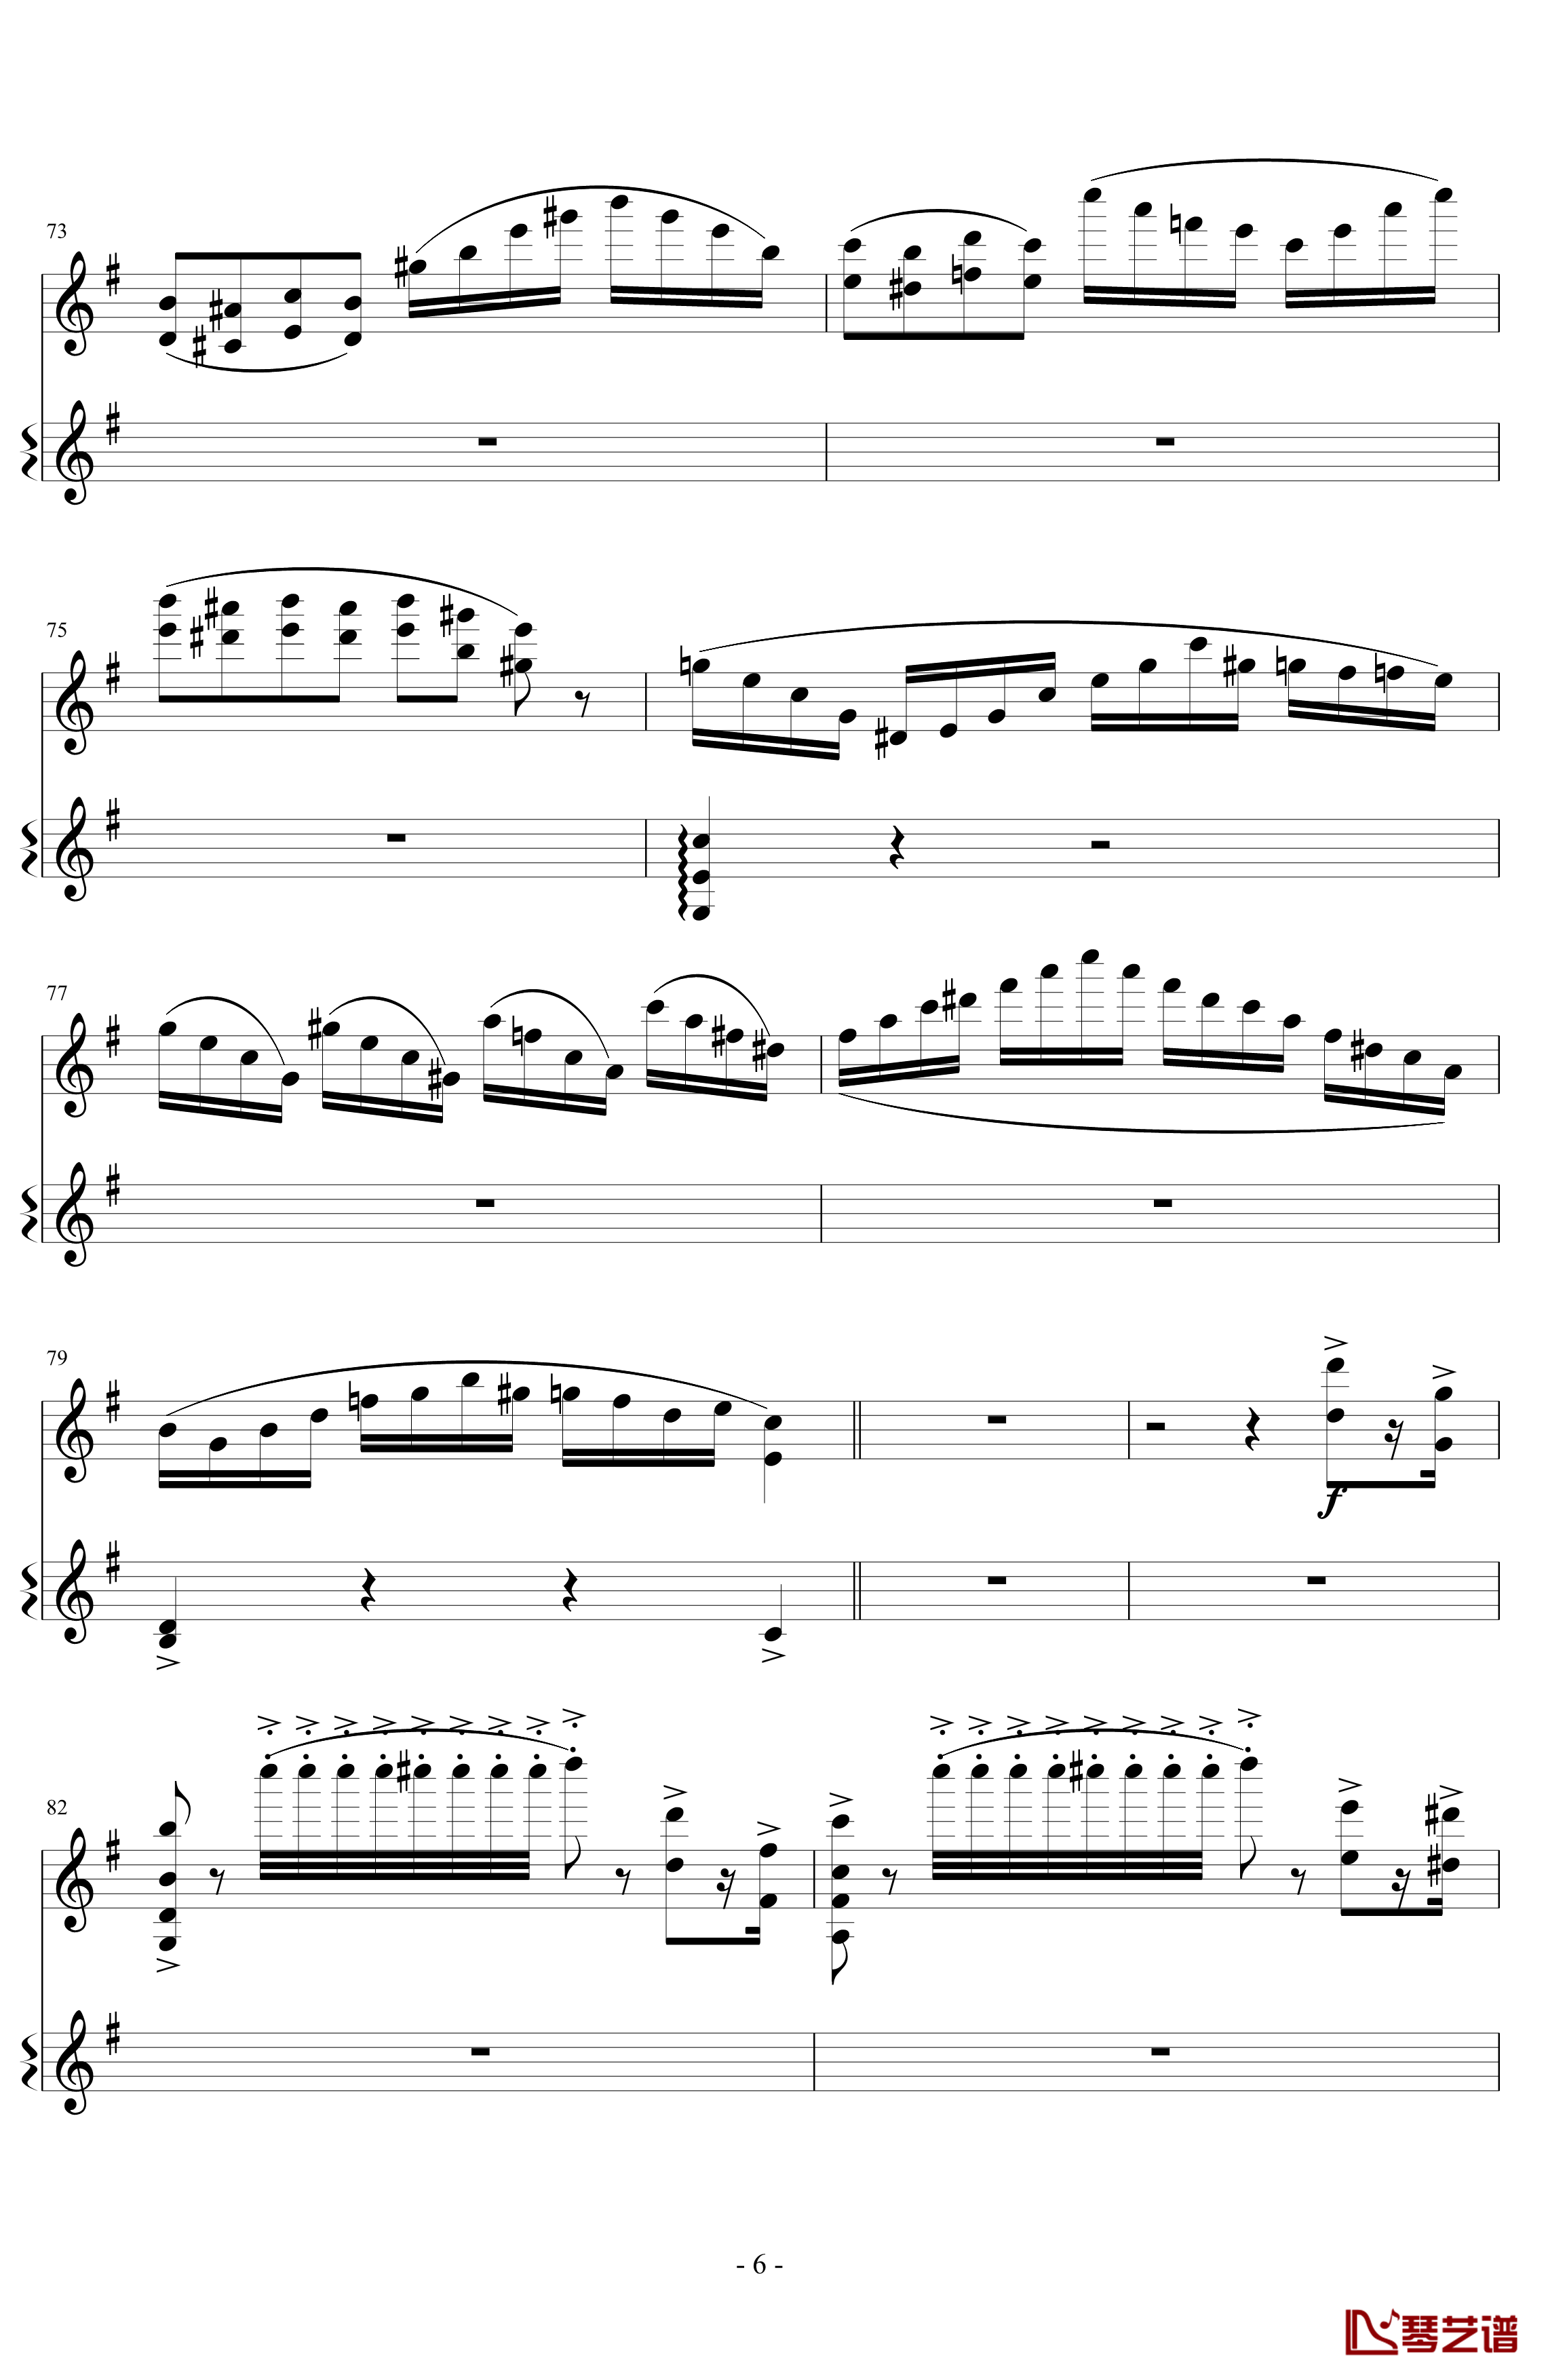 意大利国歌变奏曲钢琴谱-DXF6